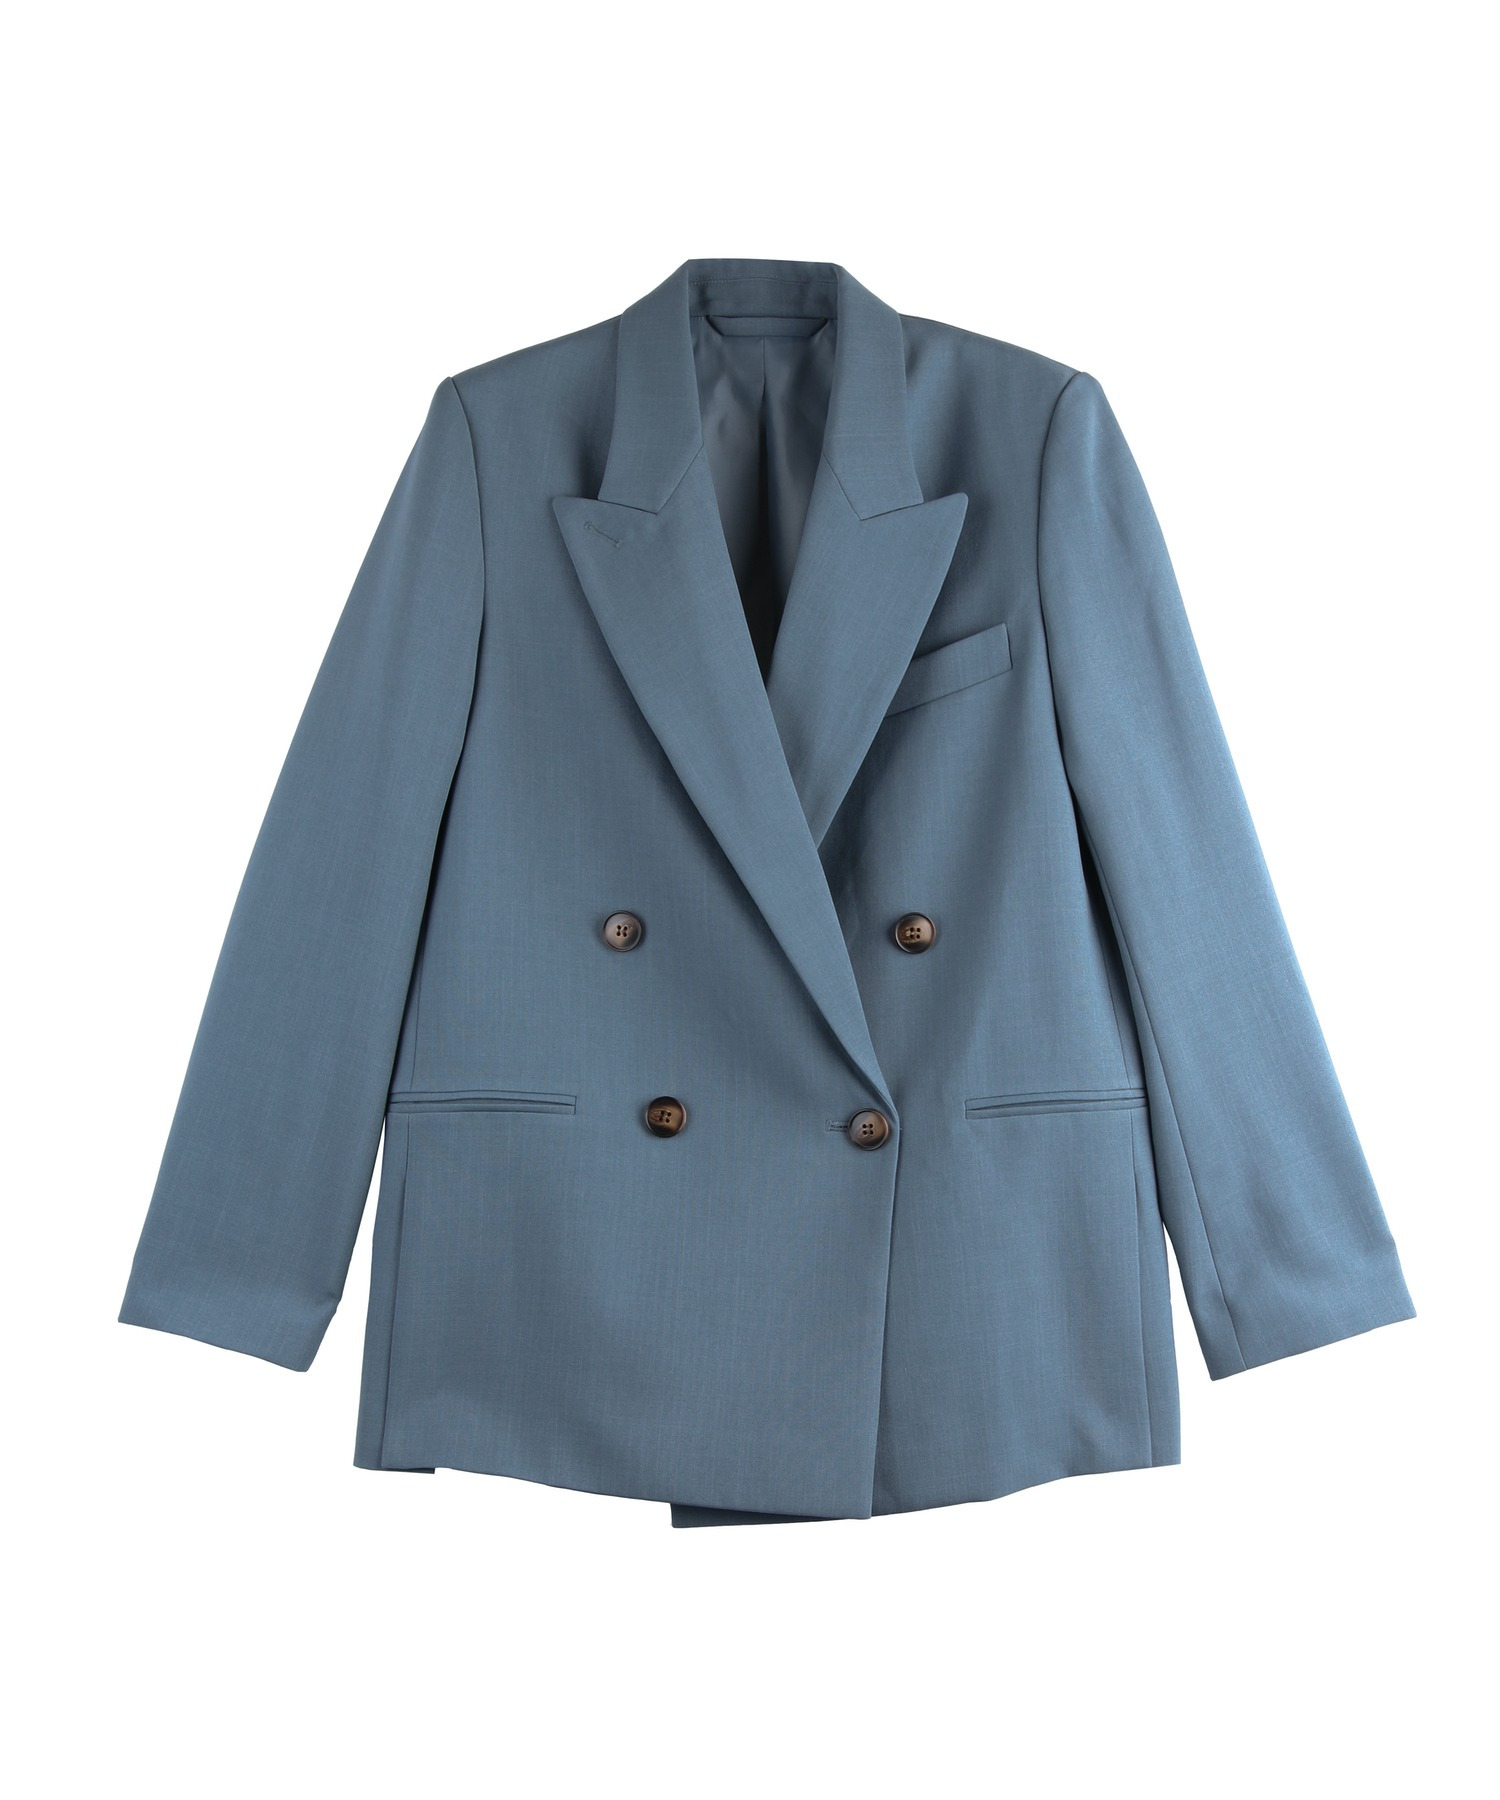 ブルー セットアップスーツ 洗濯可 chw22a174-ファッション通販サイト 